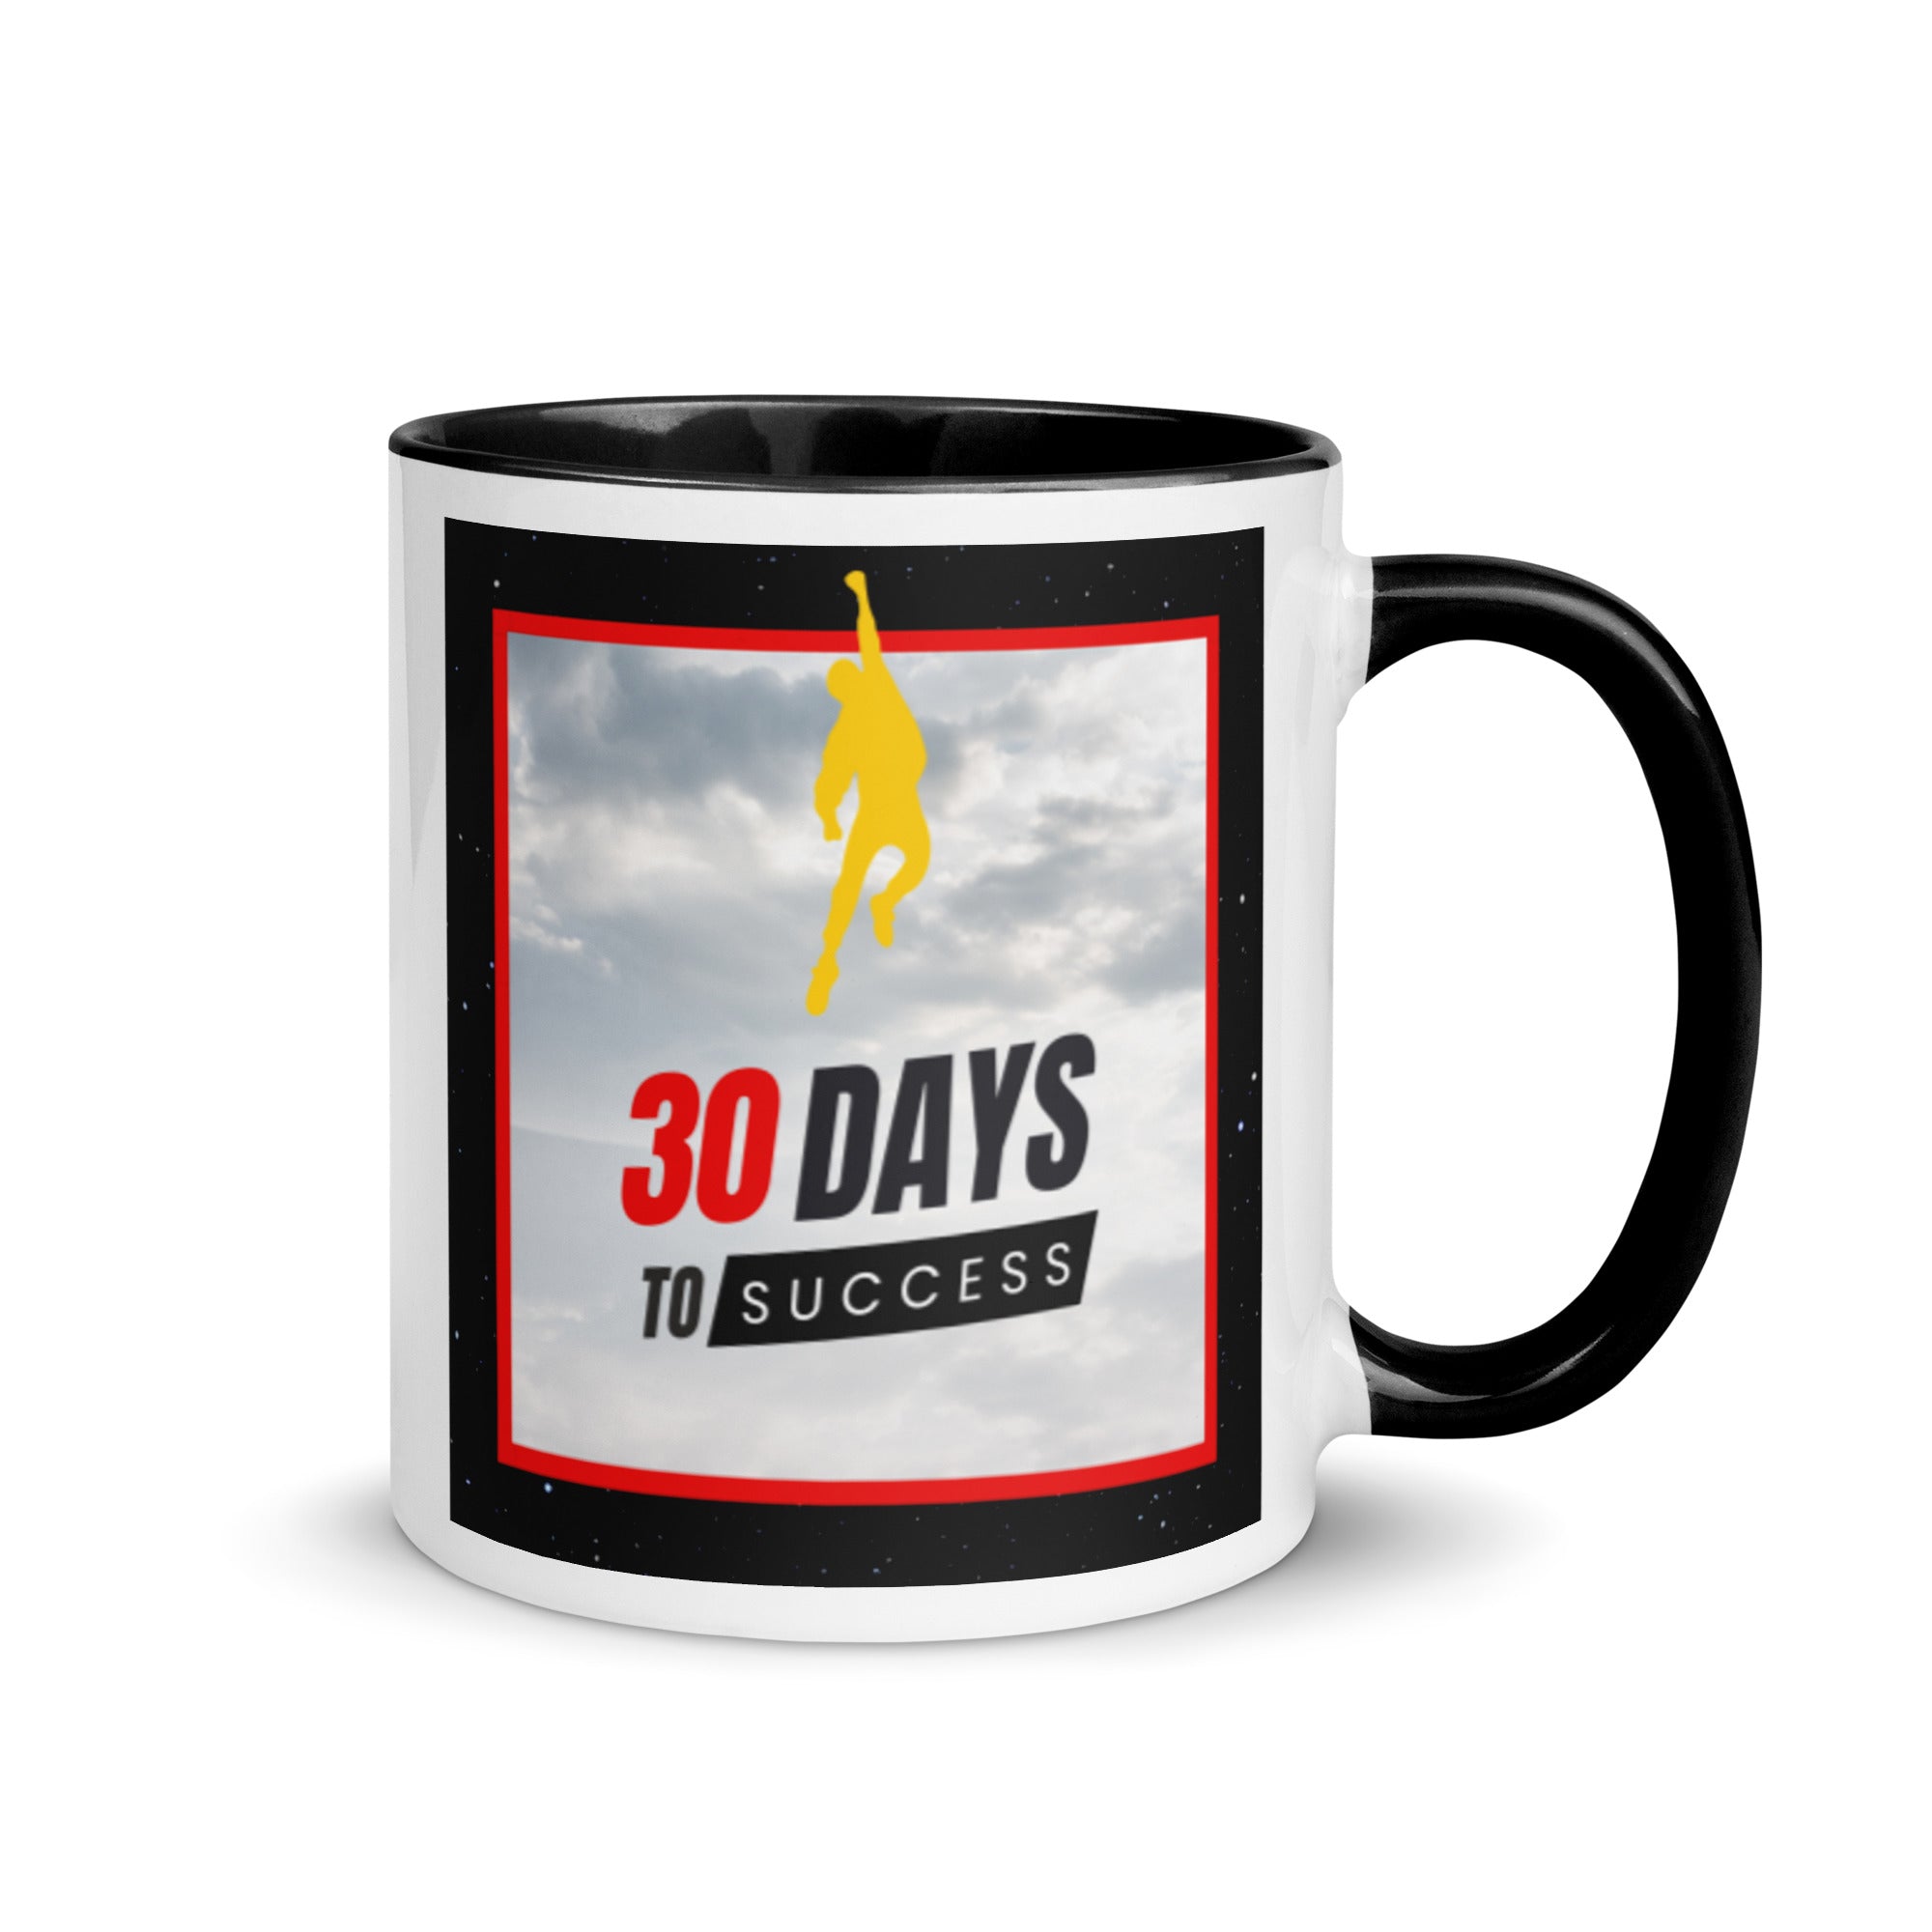 30 DTS Mug